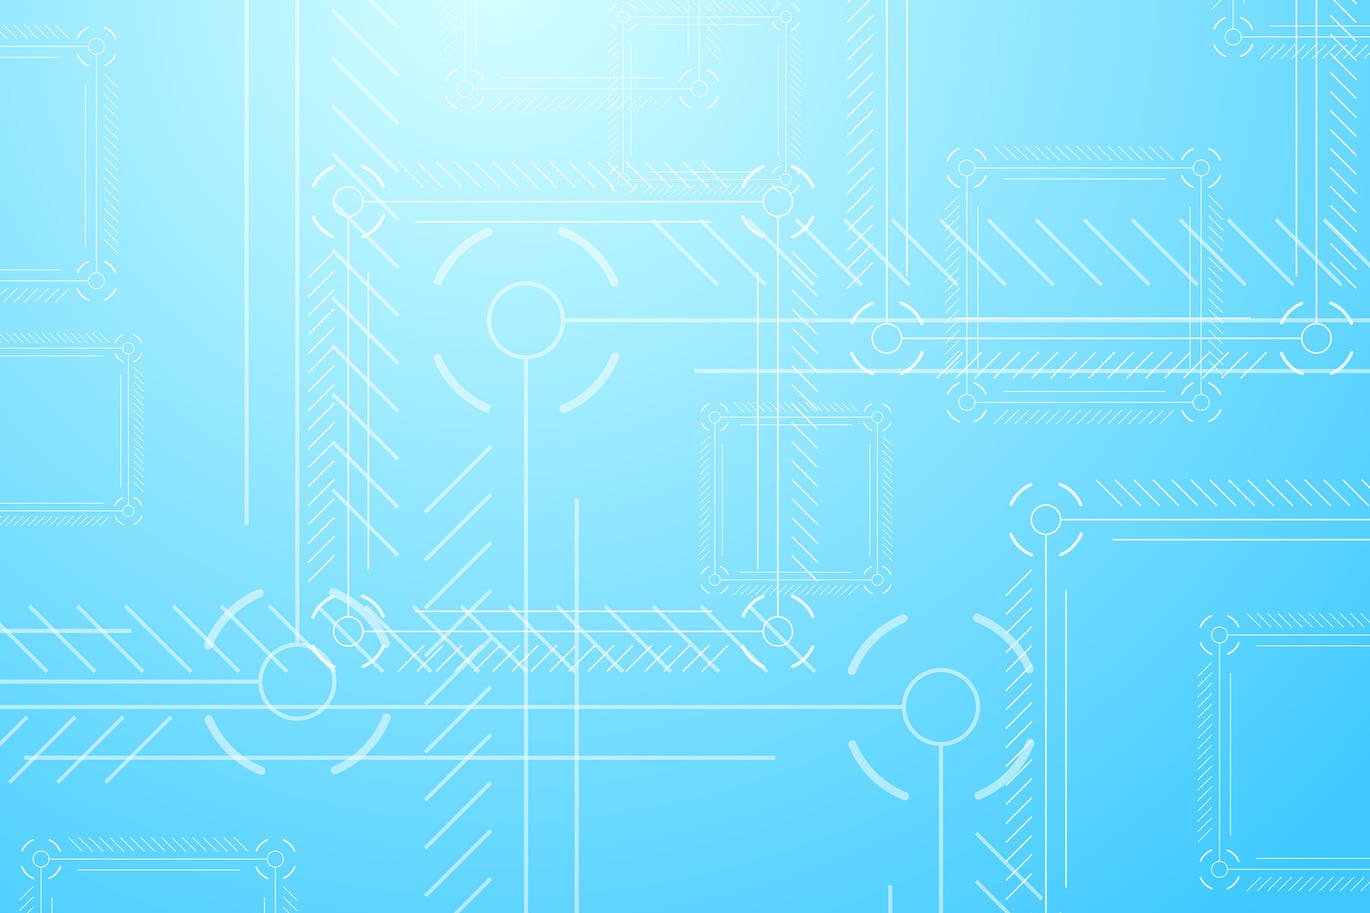 浅蓝色抽象技术背景图素材 Light blue abstract tech background插图